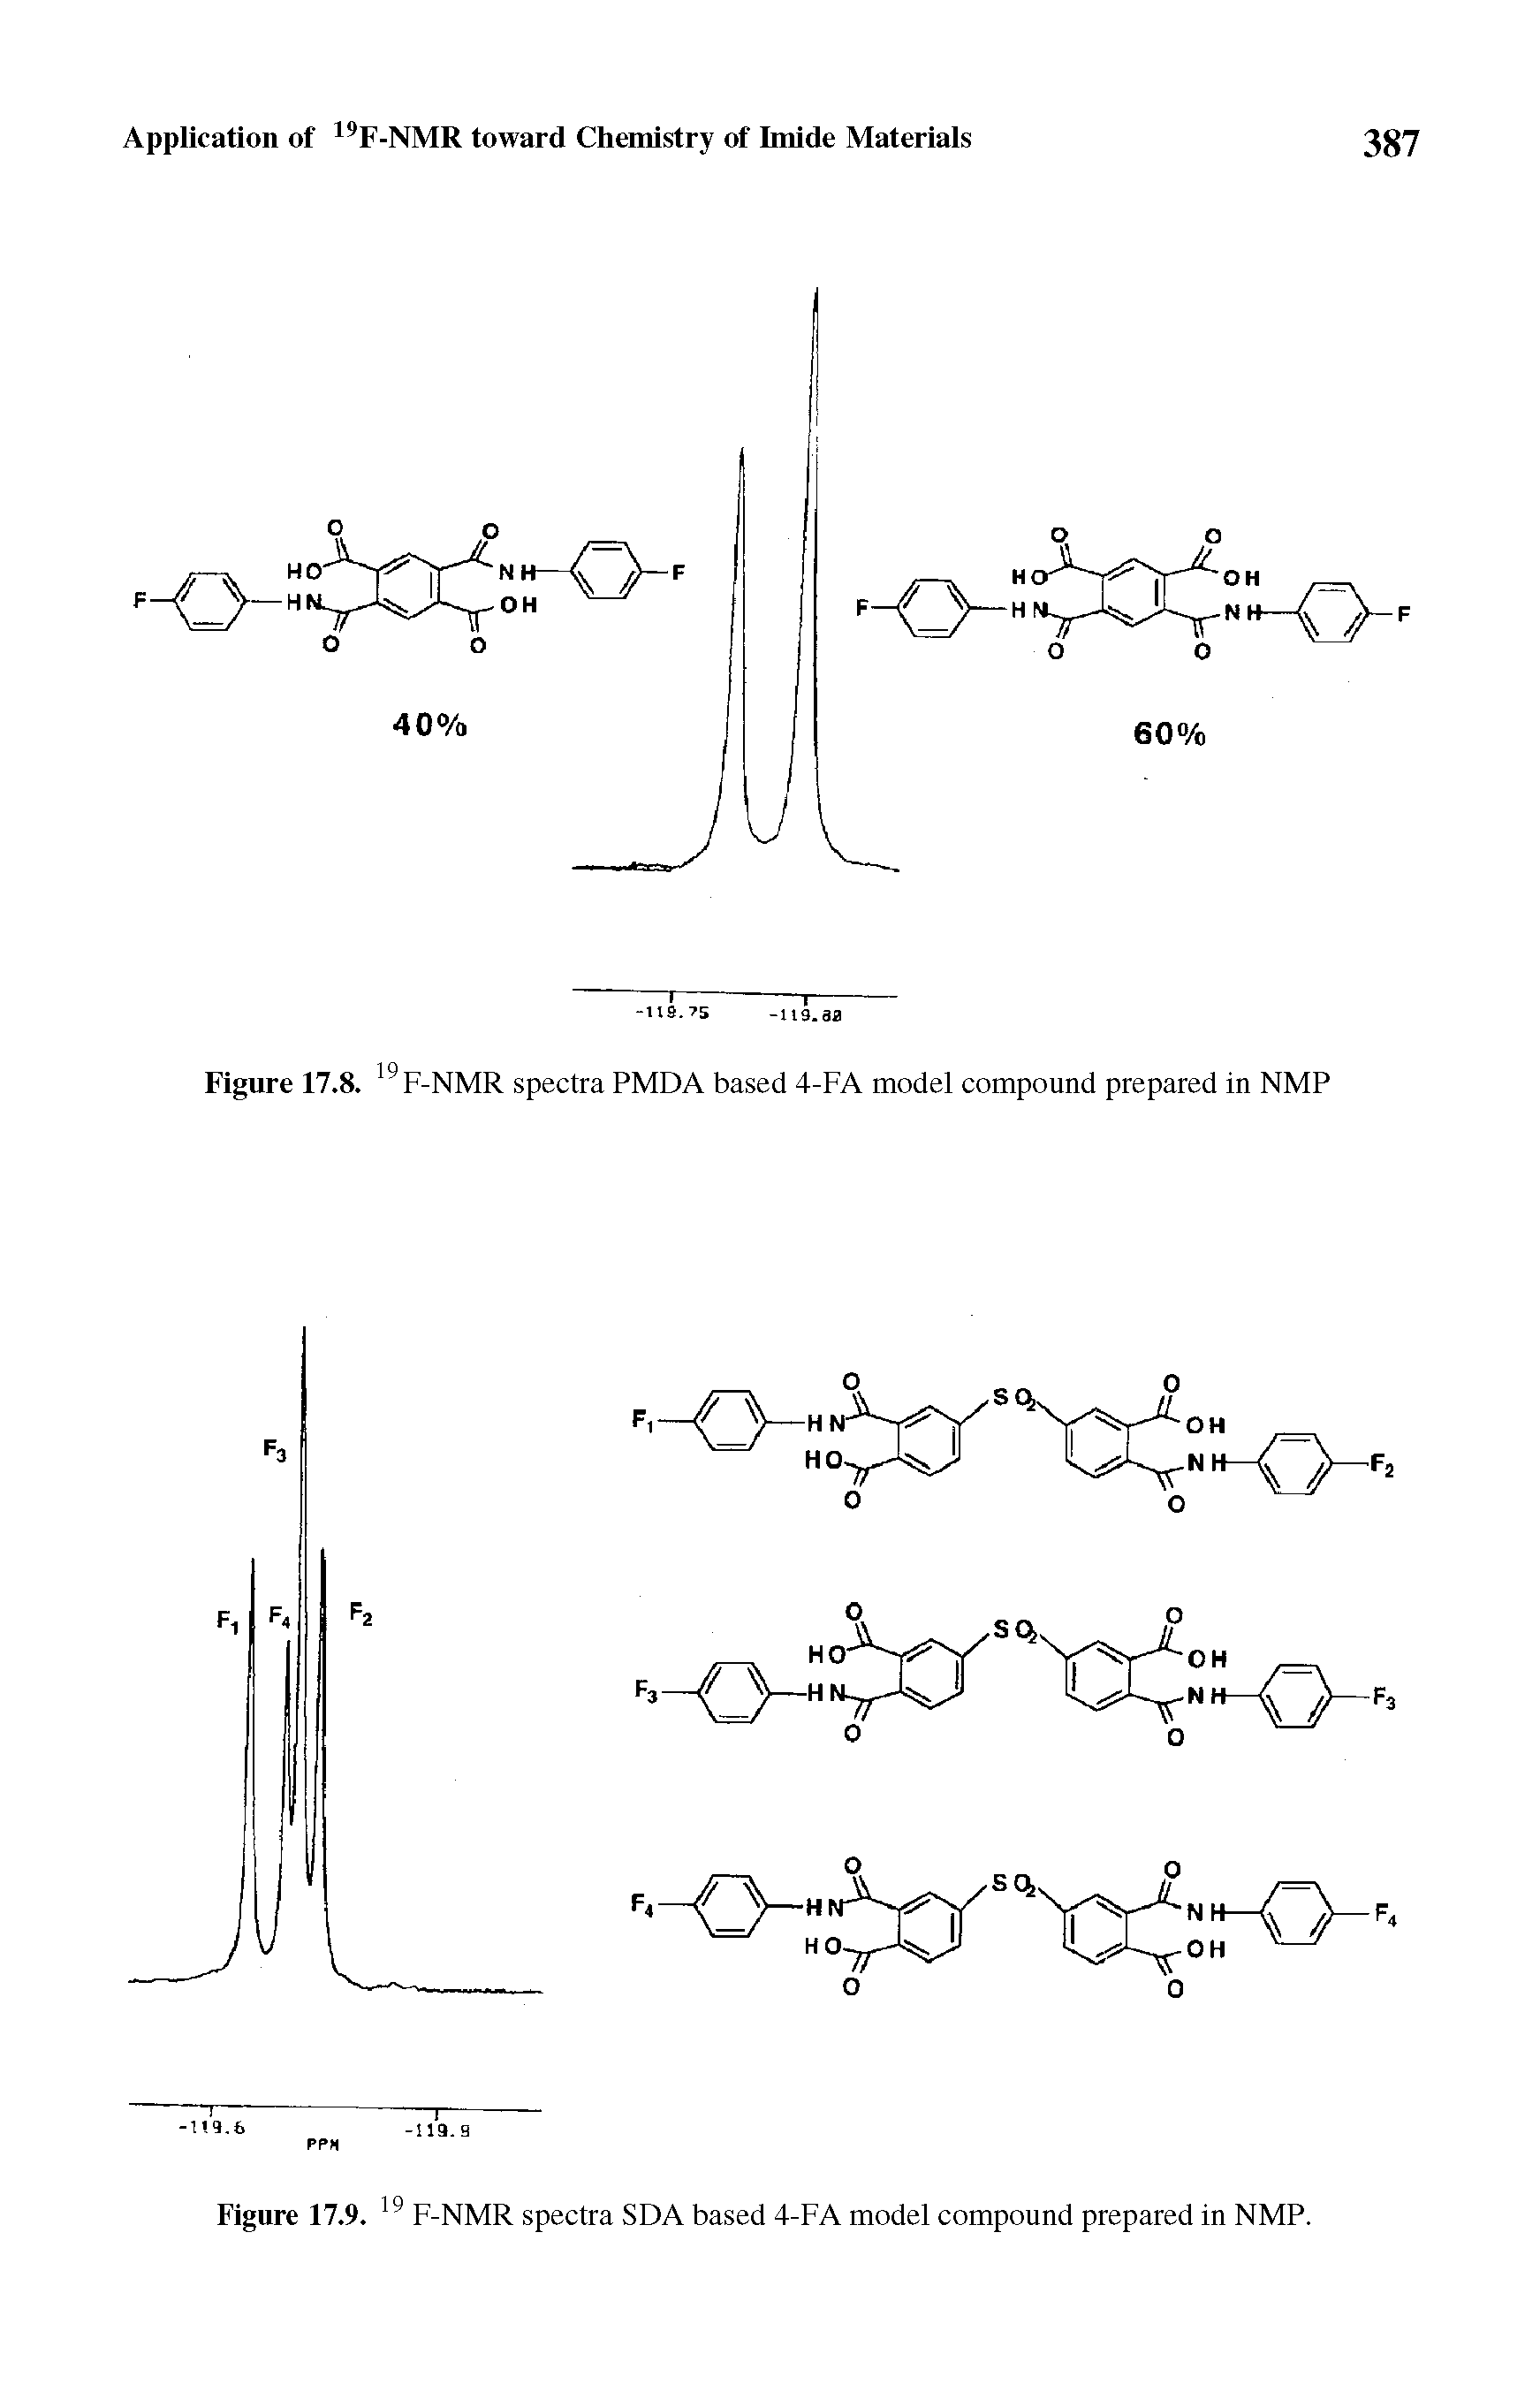 Figure 17.8. F-NMR spectra PMDA based 4-FA model compound prepared in NMP...